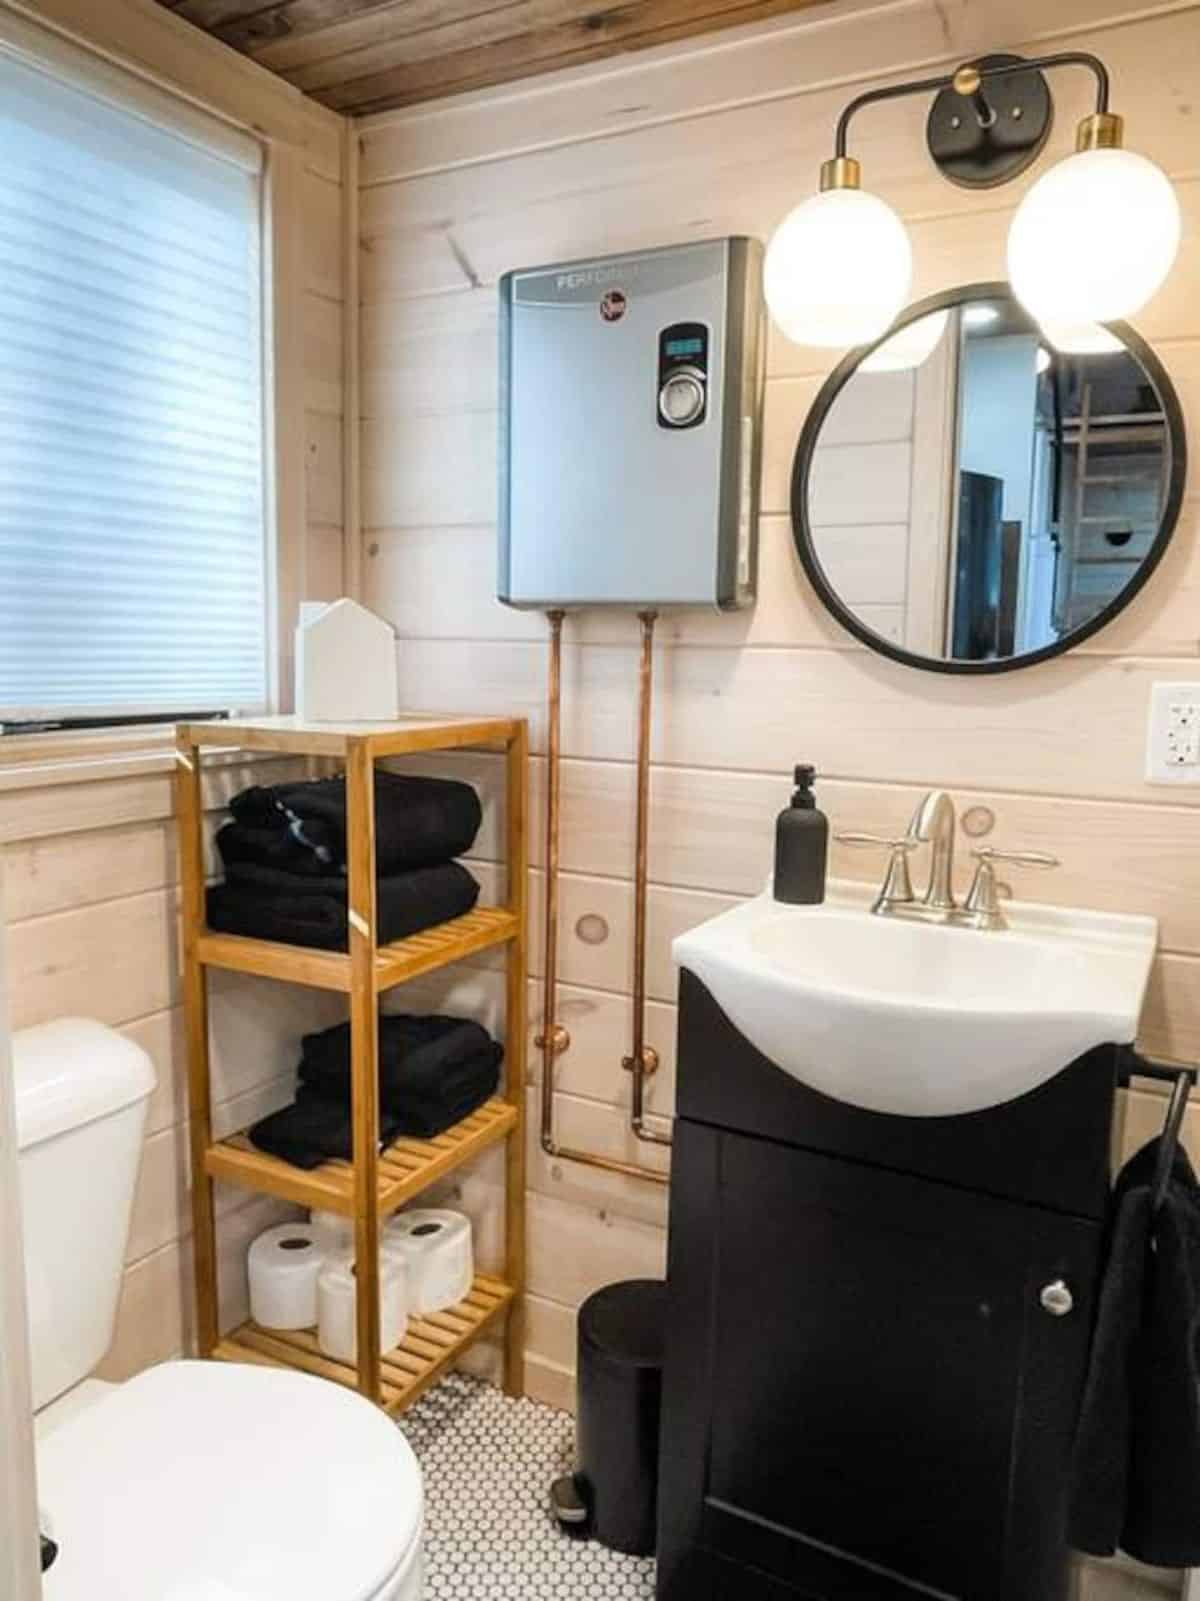 dark wood vanity cabinet below white sink with round mirror above in bathroom